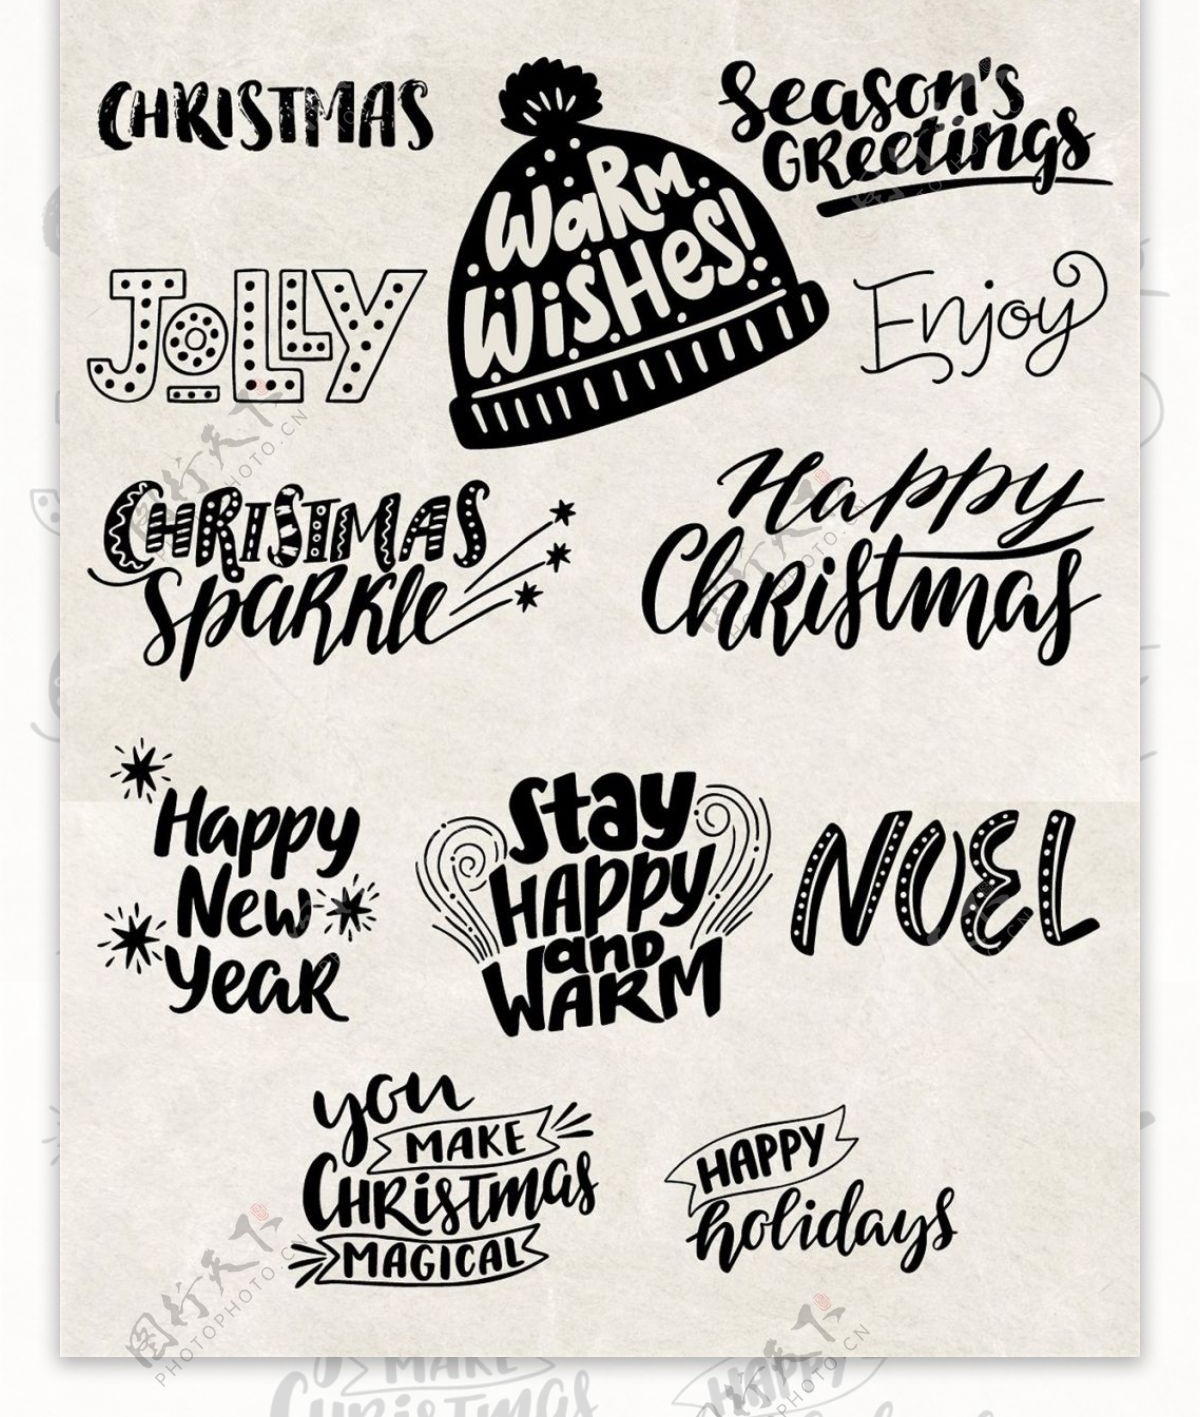 黑爱圣诞节日装饰字体矢量素材